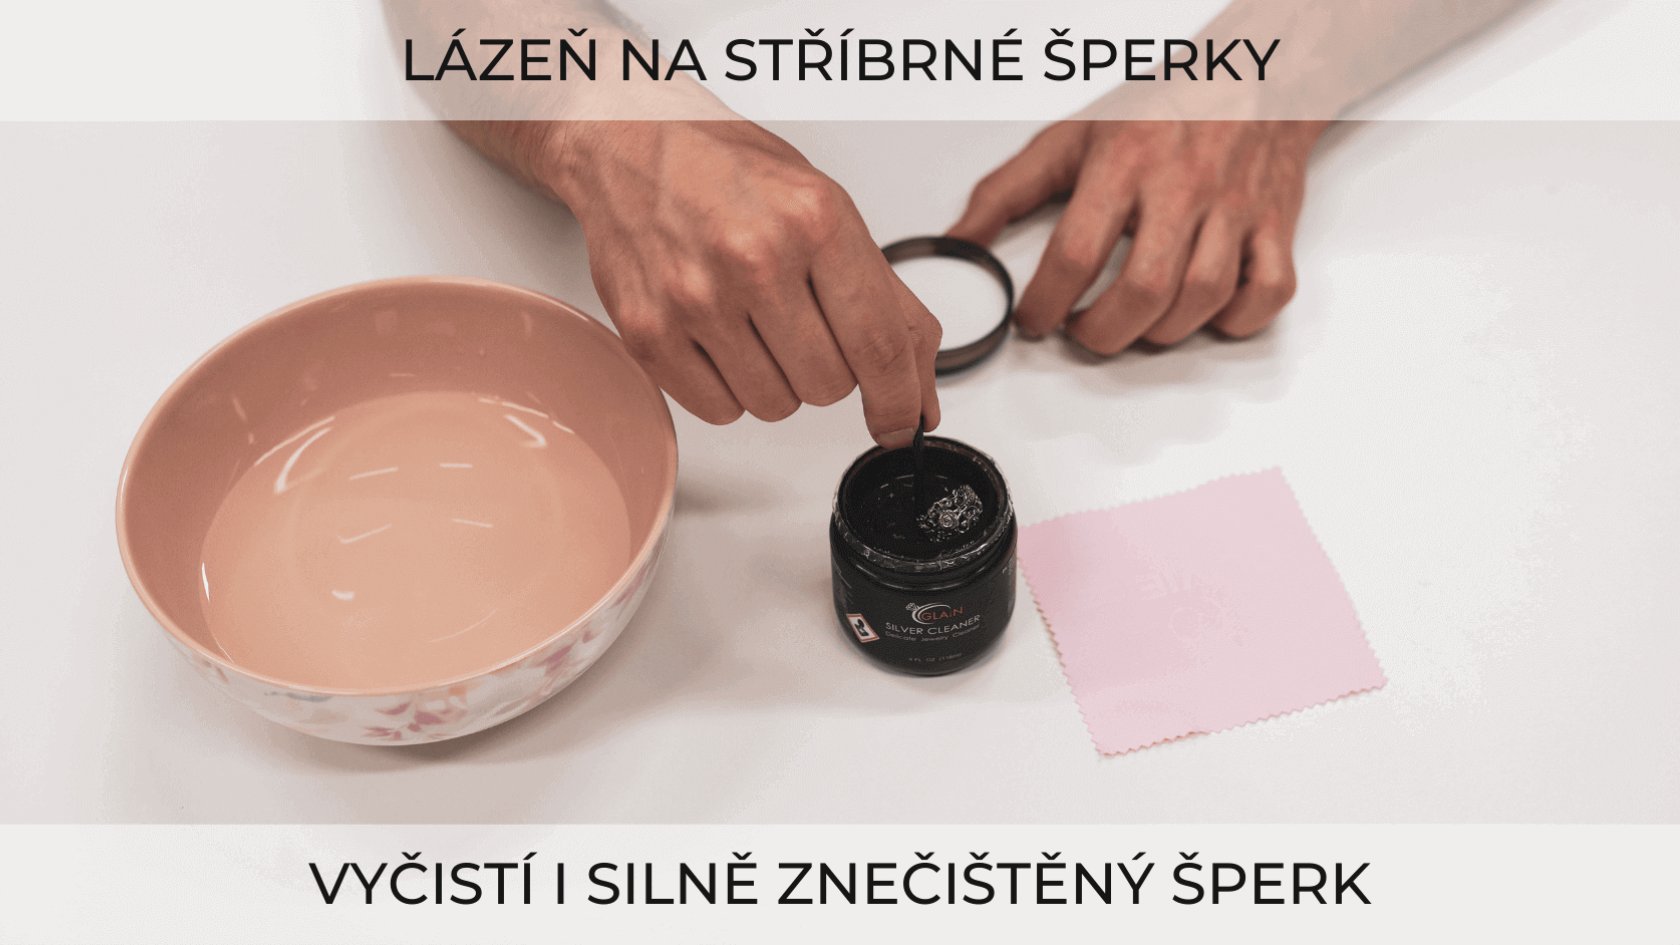 Čisticí lázeň na stříbro z OLIVIE.cz